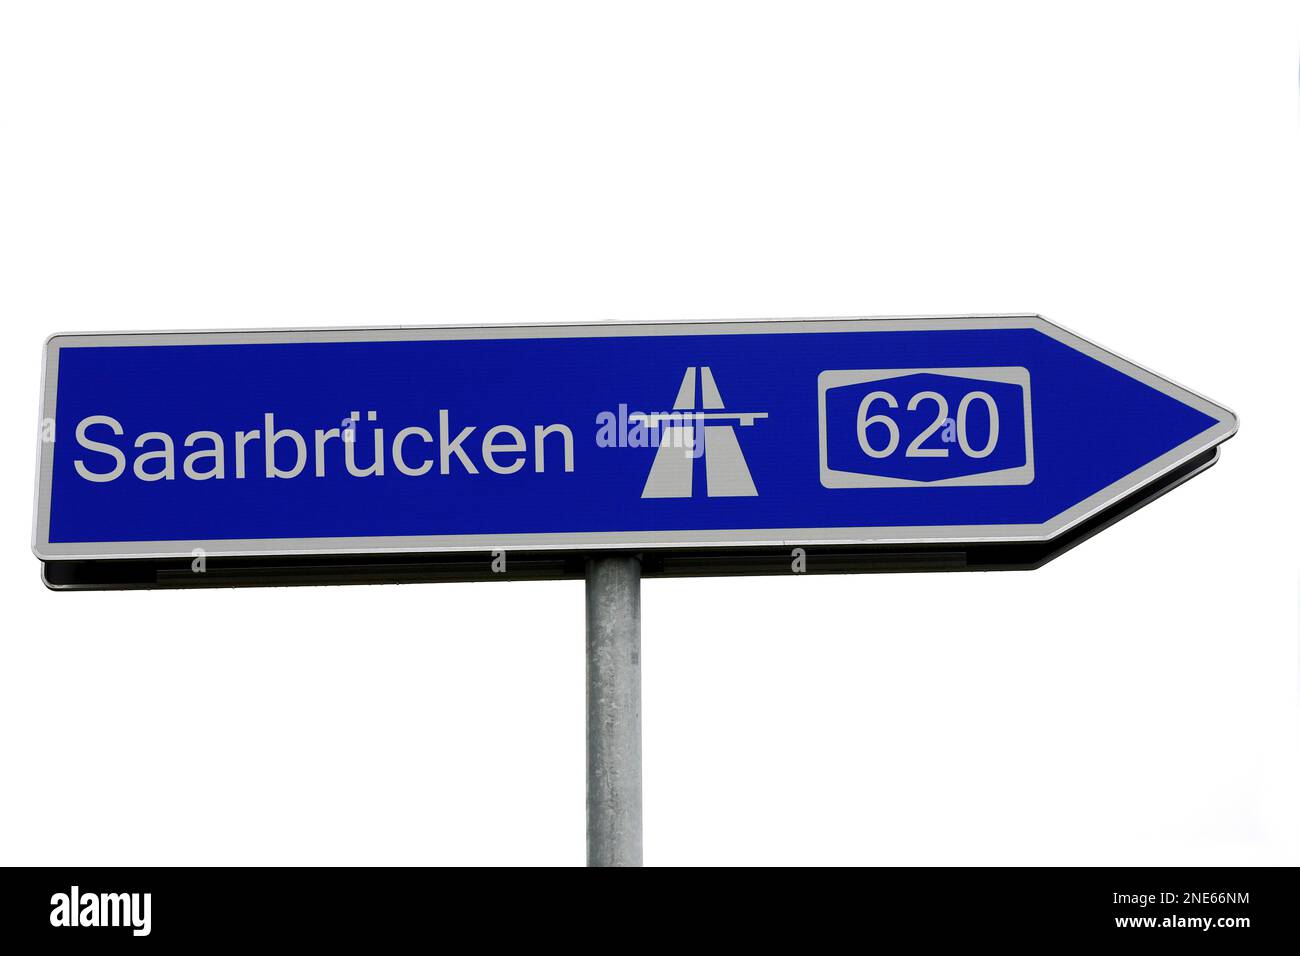 Signpost to the A620 motorway towards Saarbruecken Stock Photo